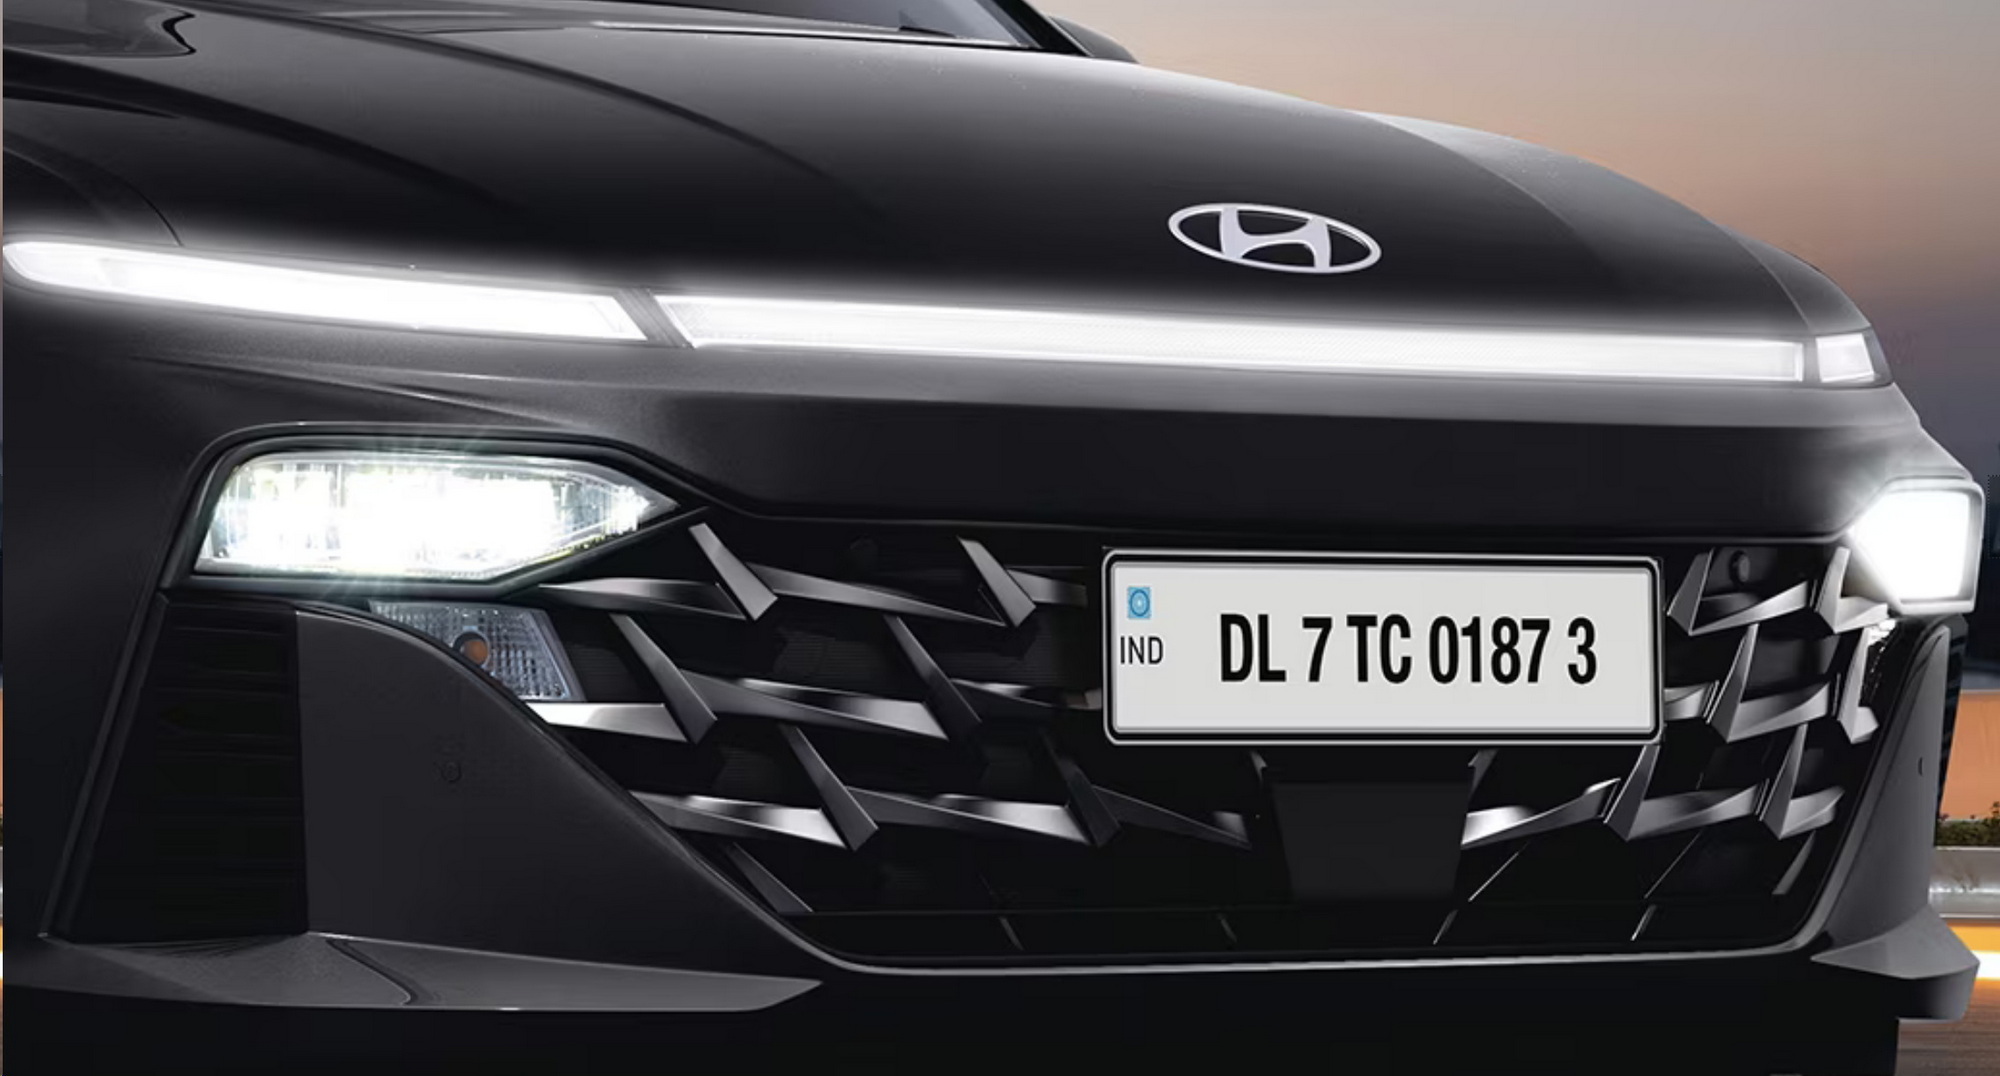 Tải ảnh xe Hyundai Accent cực chi tiết 19